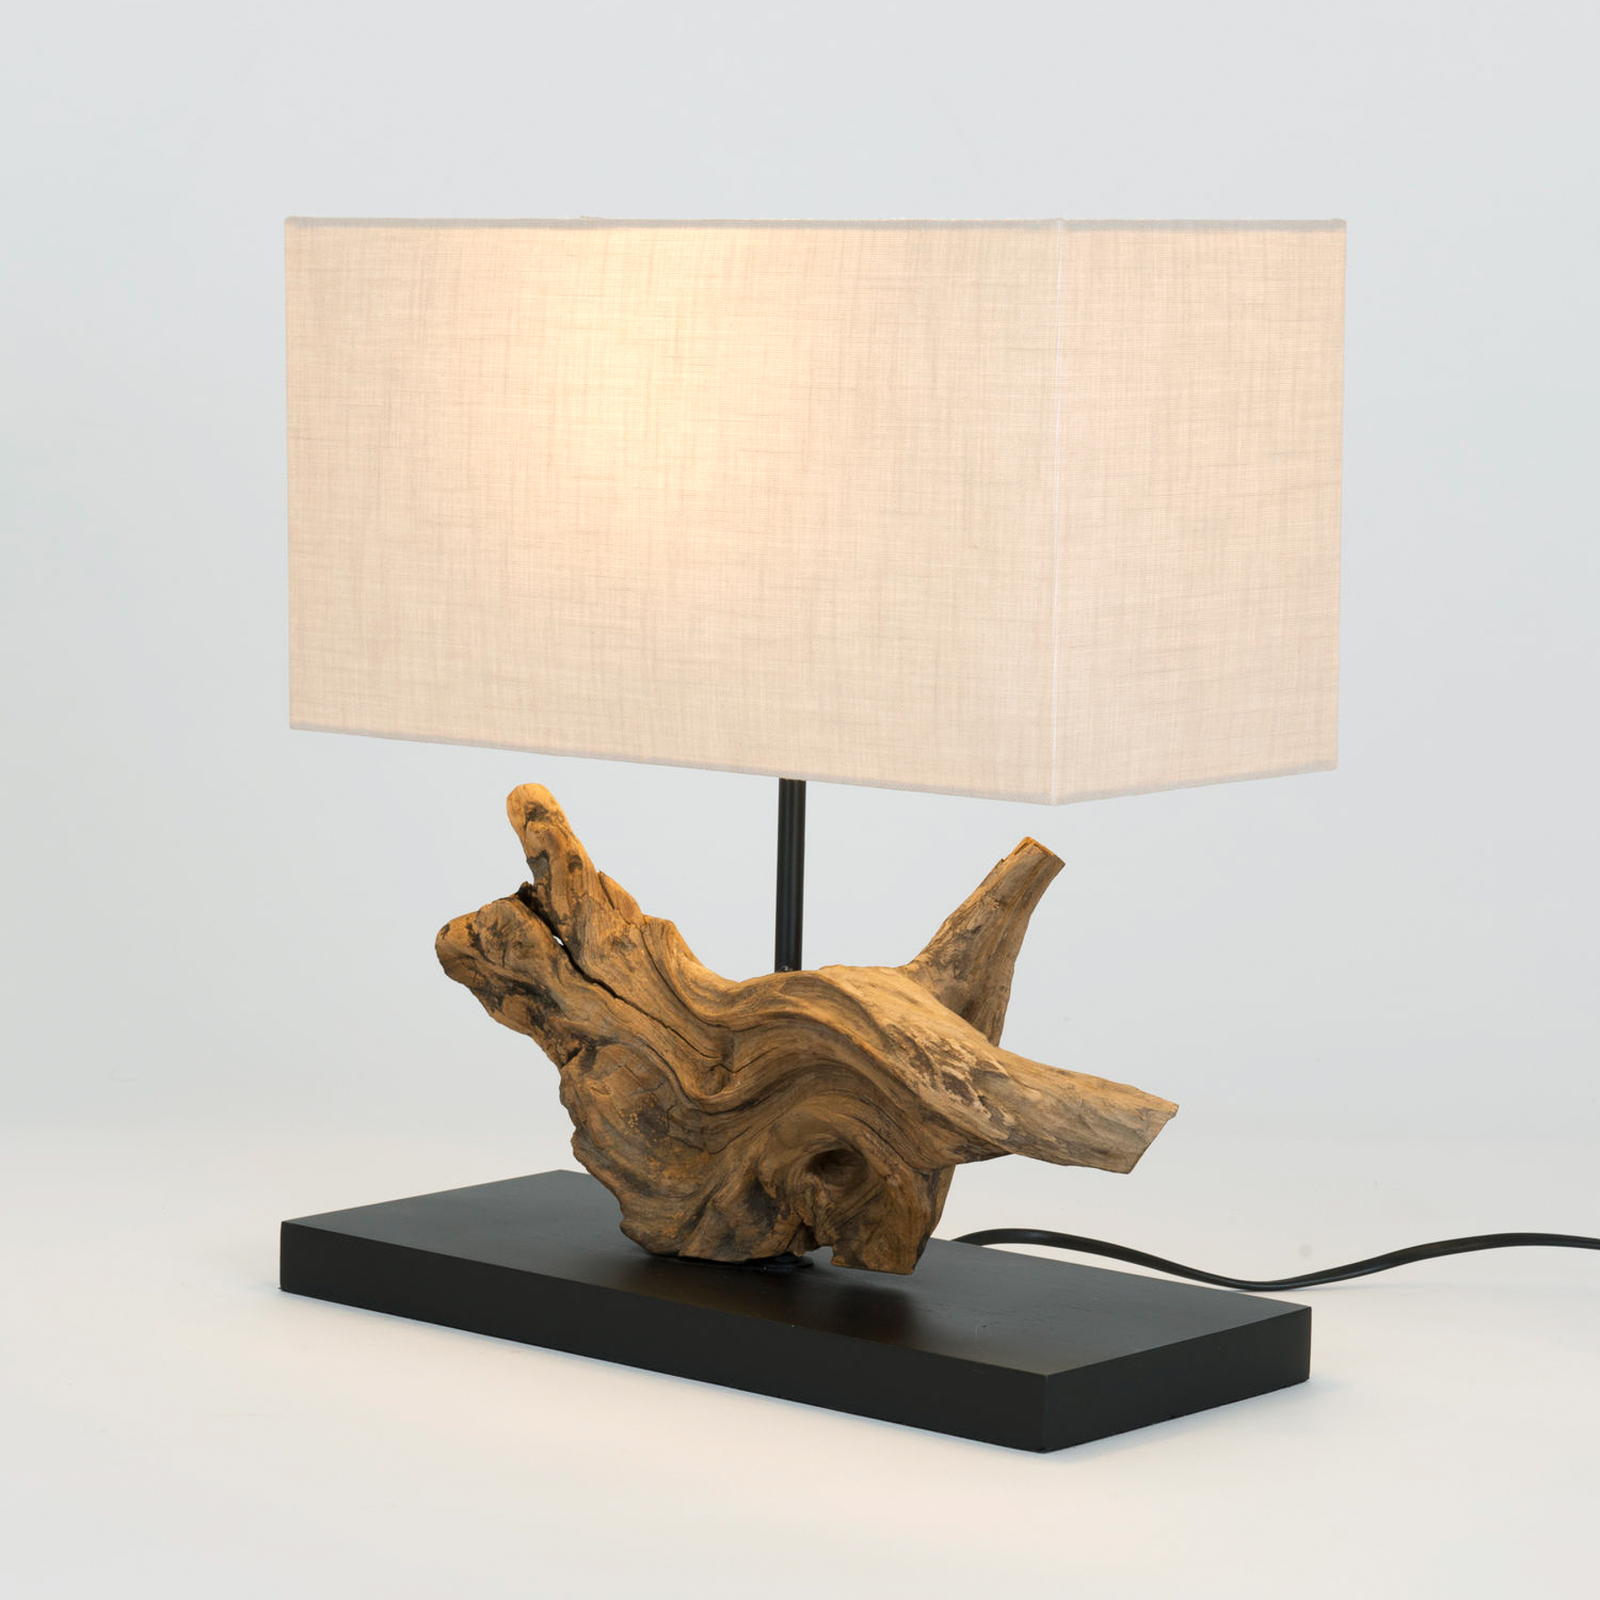 Επιτραπέζιο φωτιστικό Lipari, χρώμα ξύλου/μπεζ, ύψος 41 cm, λινό